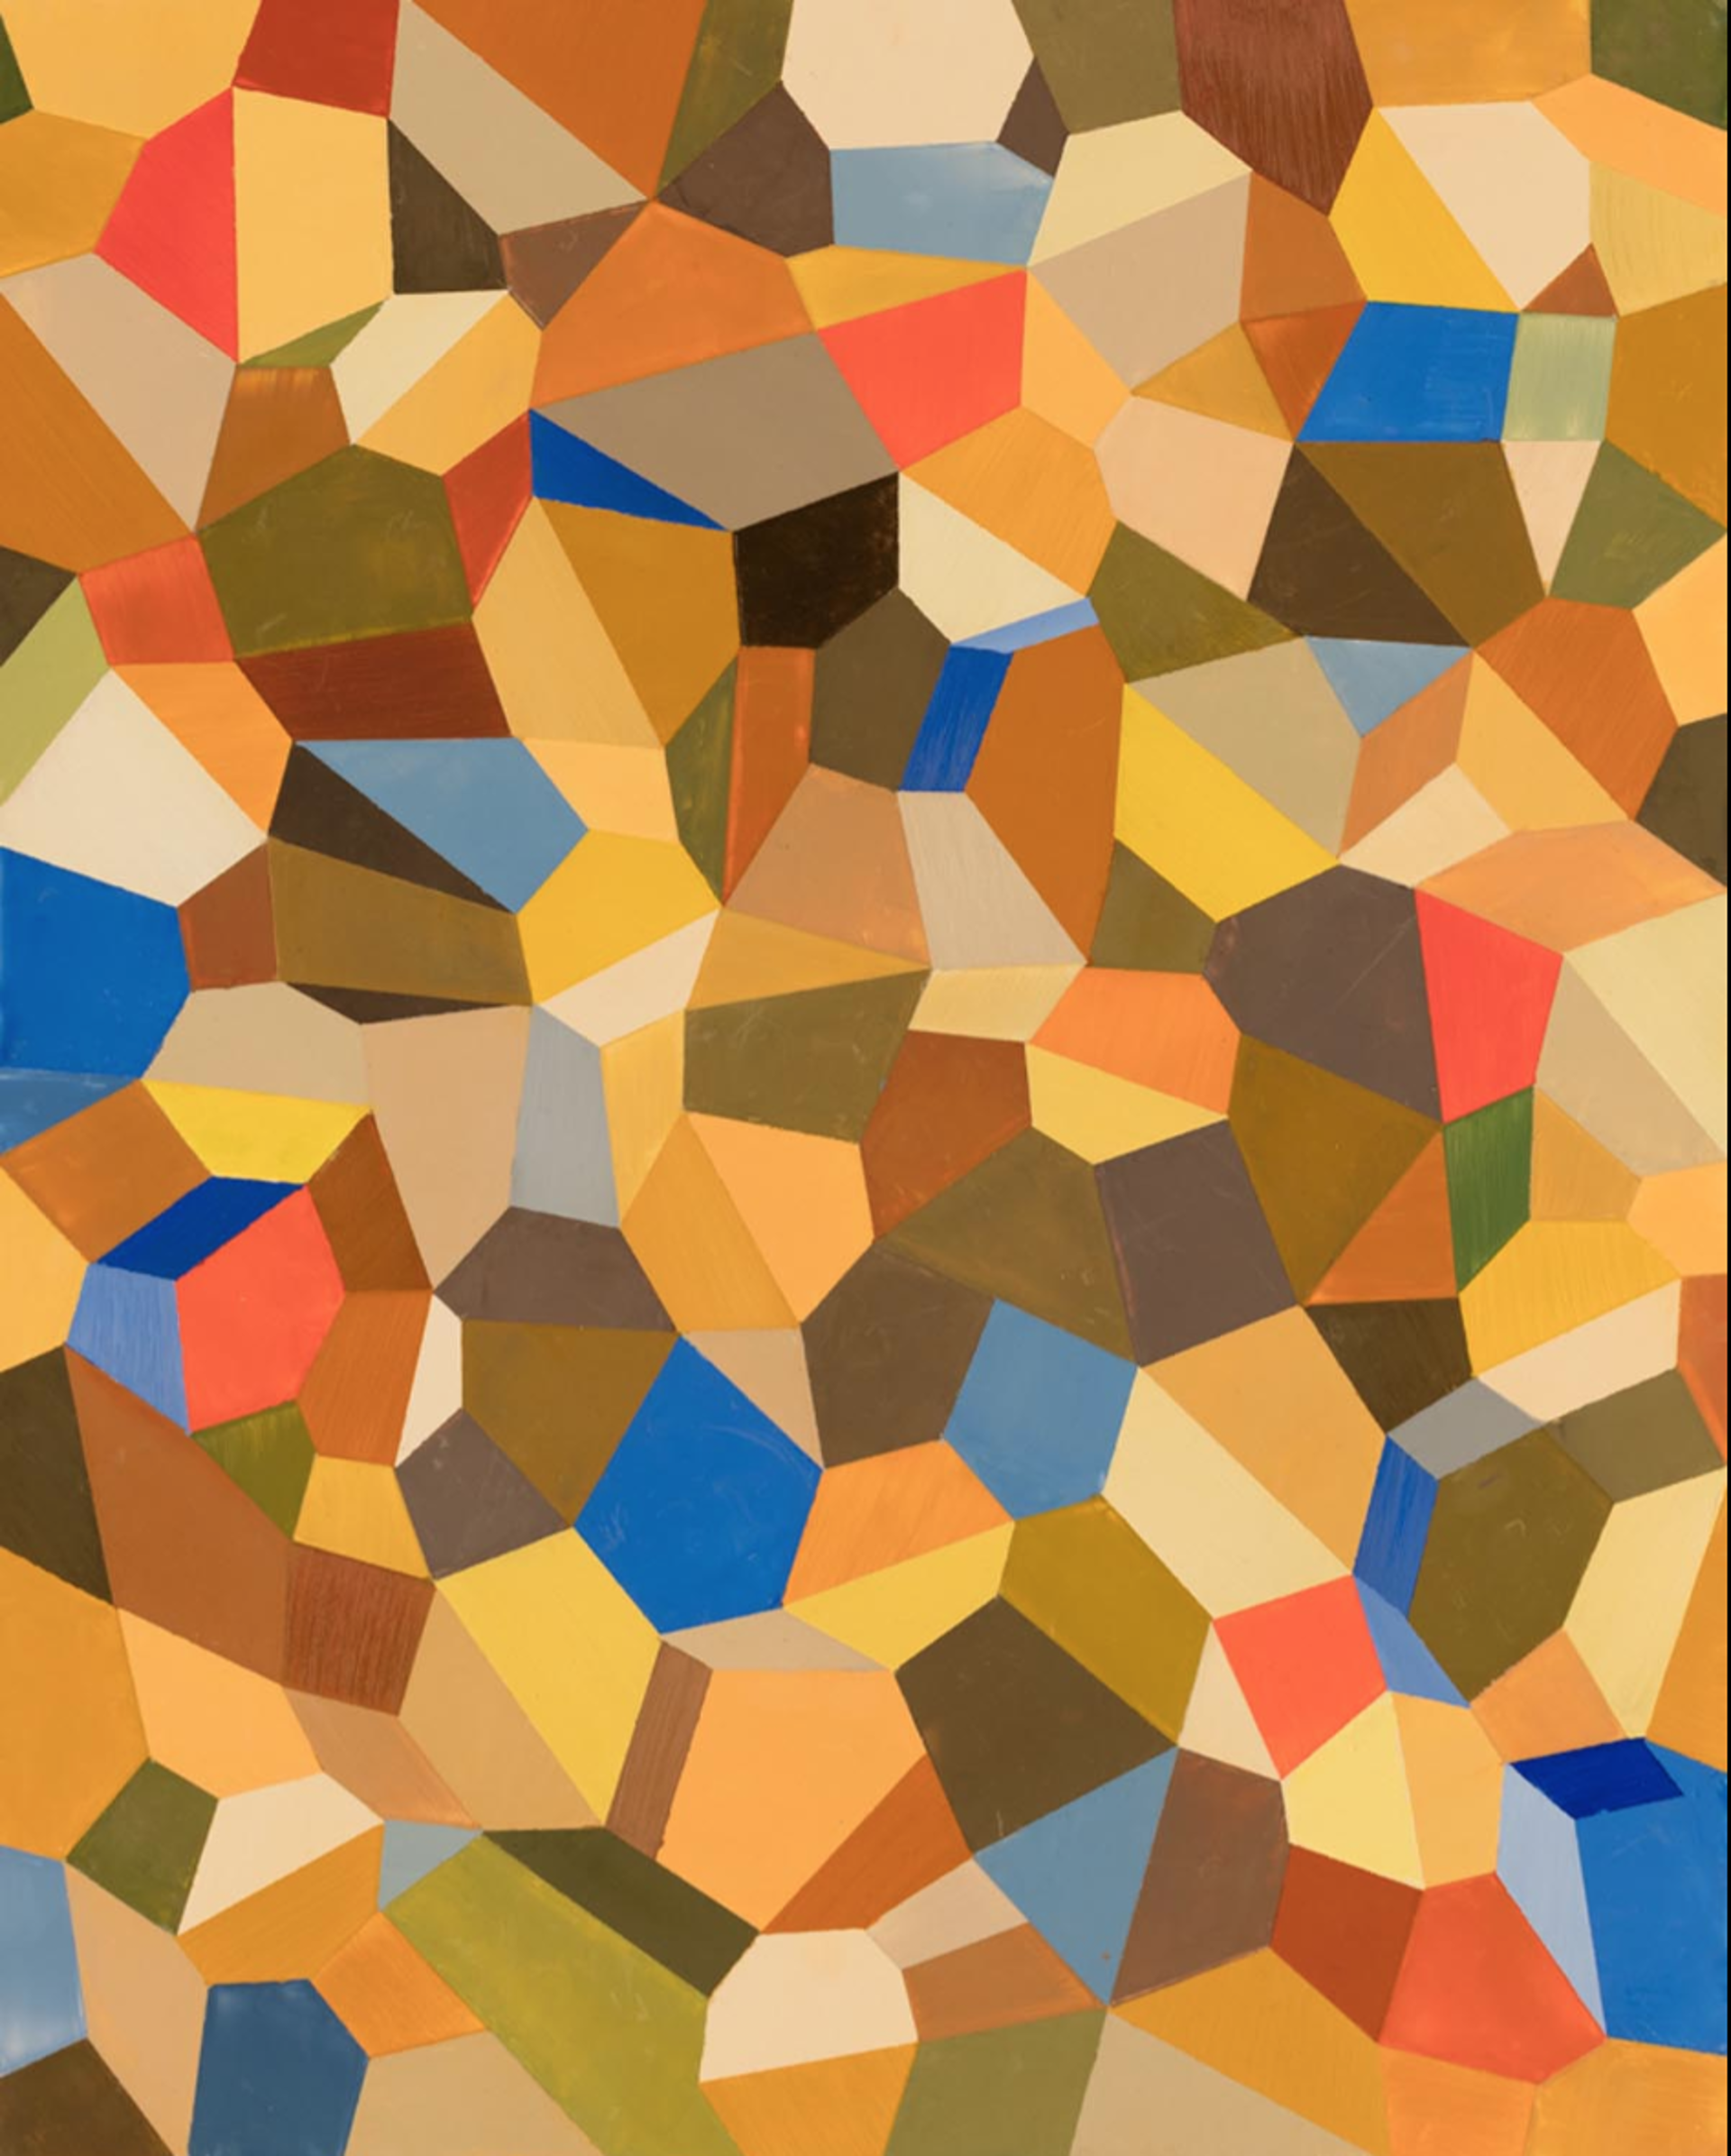 Mosaic 5 by Jeff Long